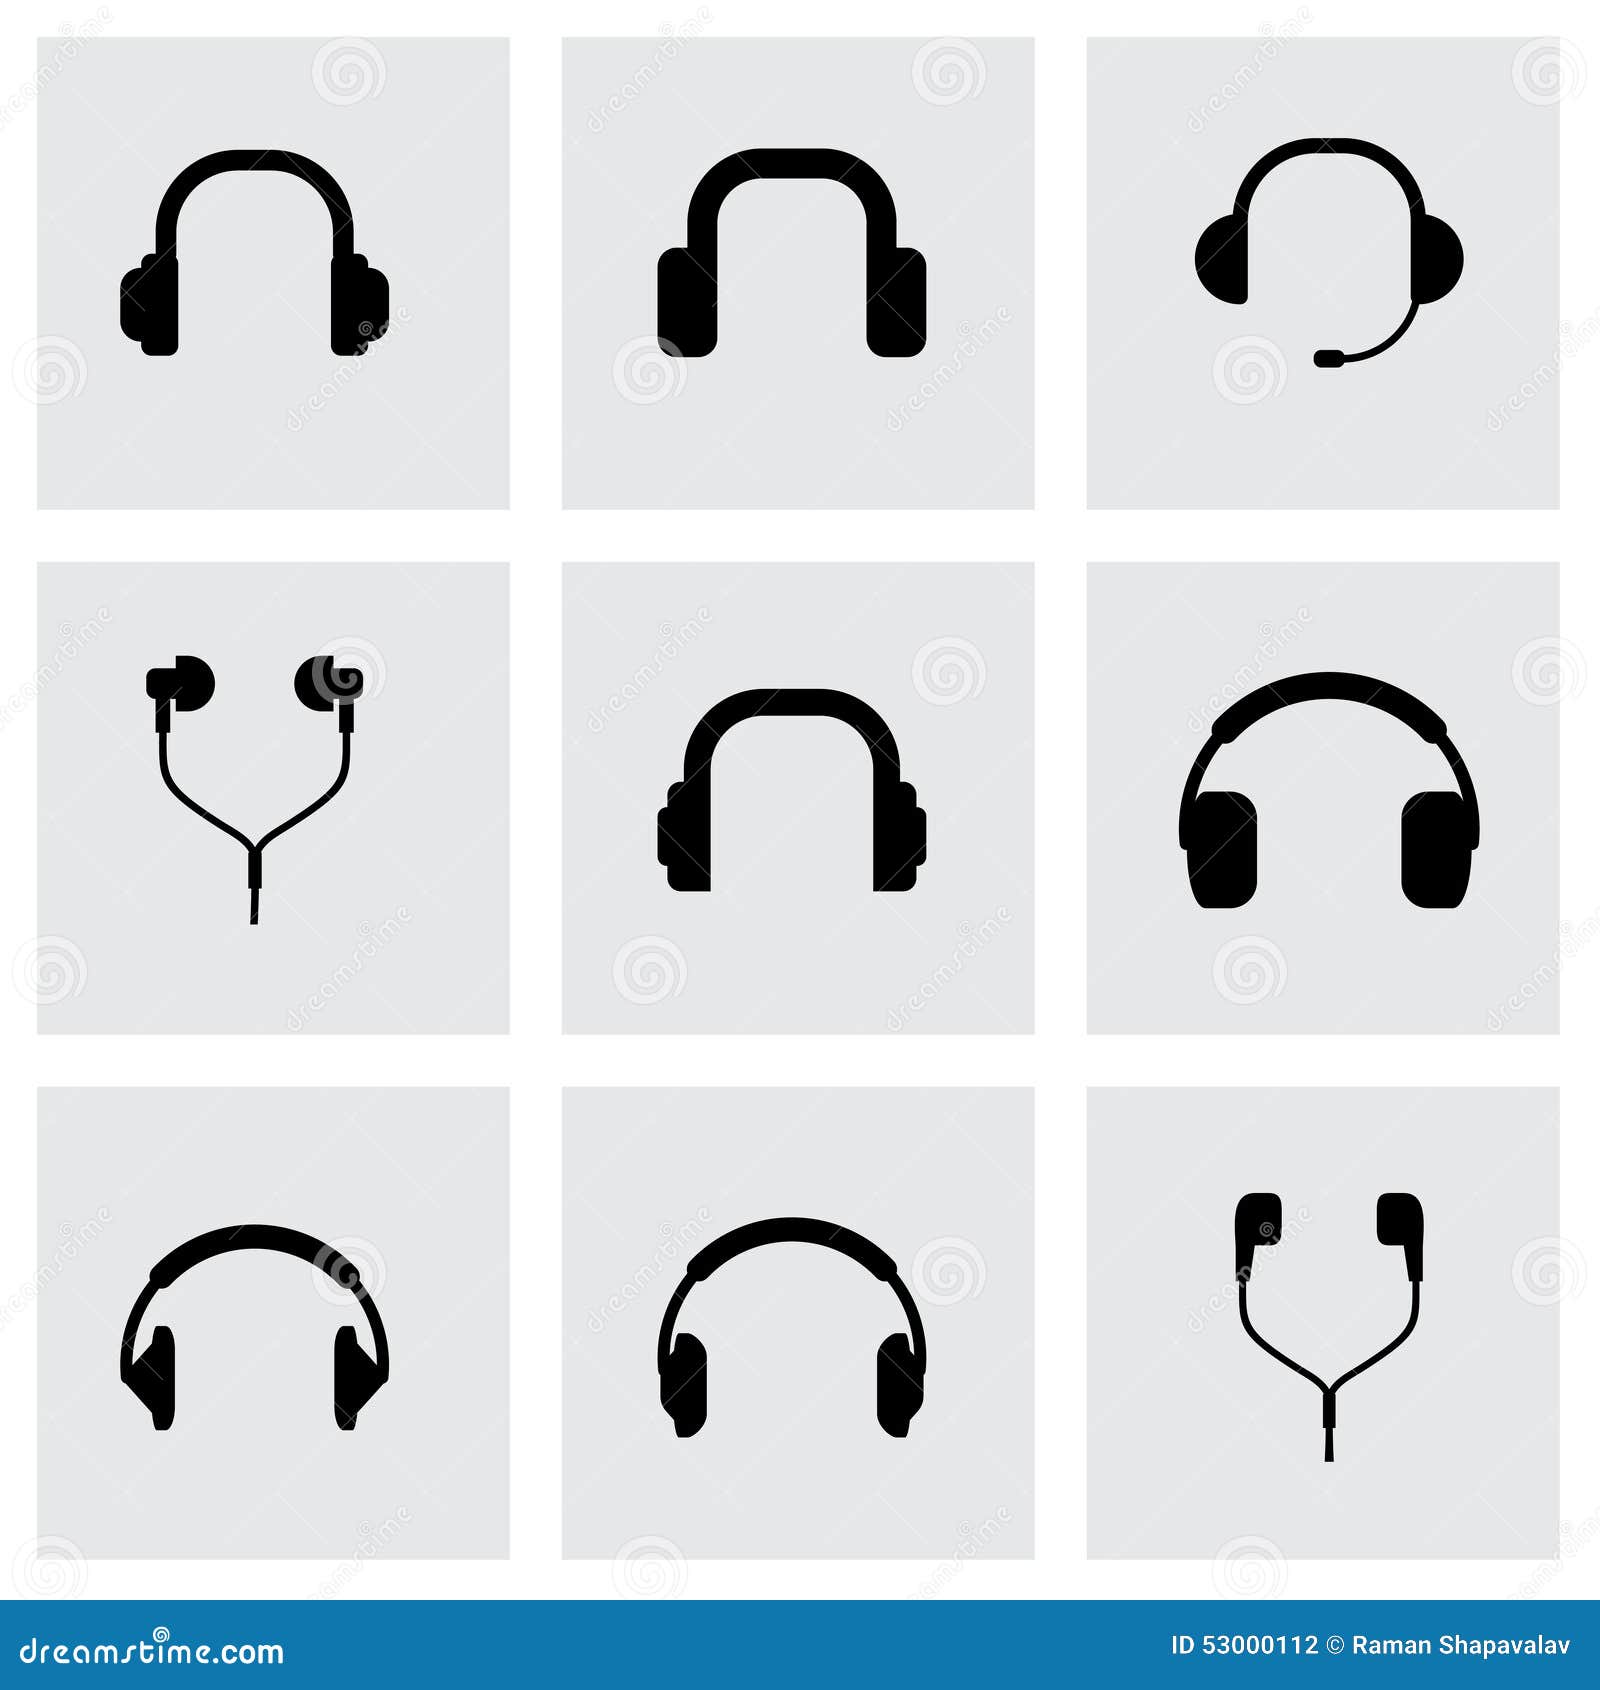  headphone icon set